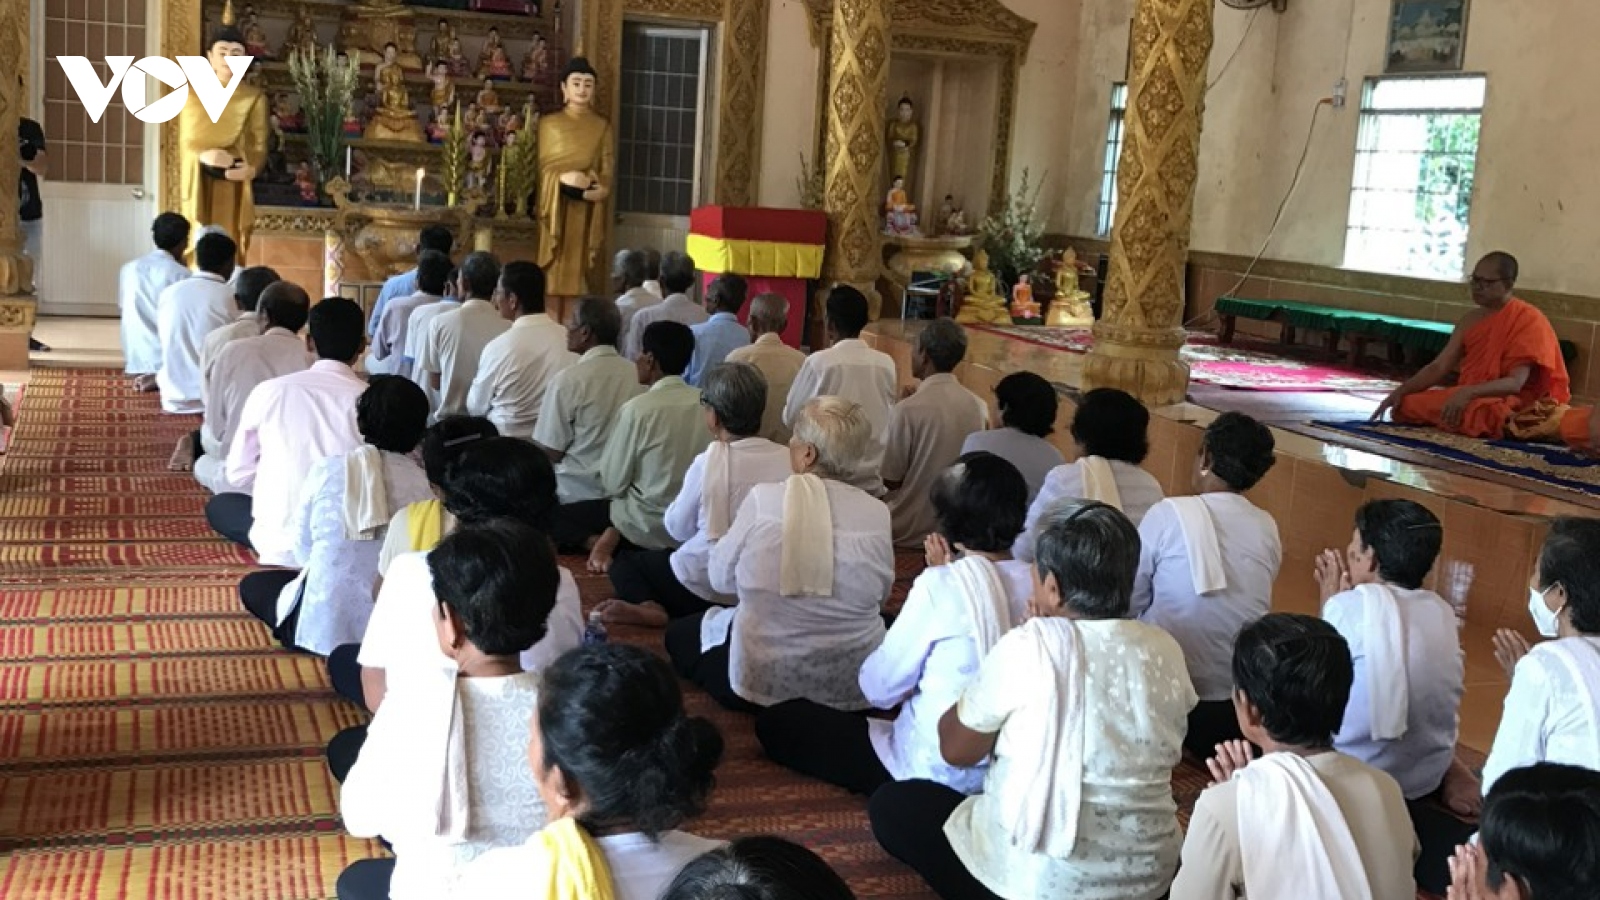 Đánh giá về tôn giáo ở Việt Nam không thể dựa trên các trường hợp đơn lẻ